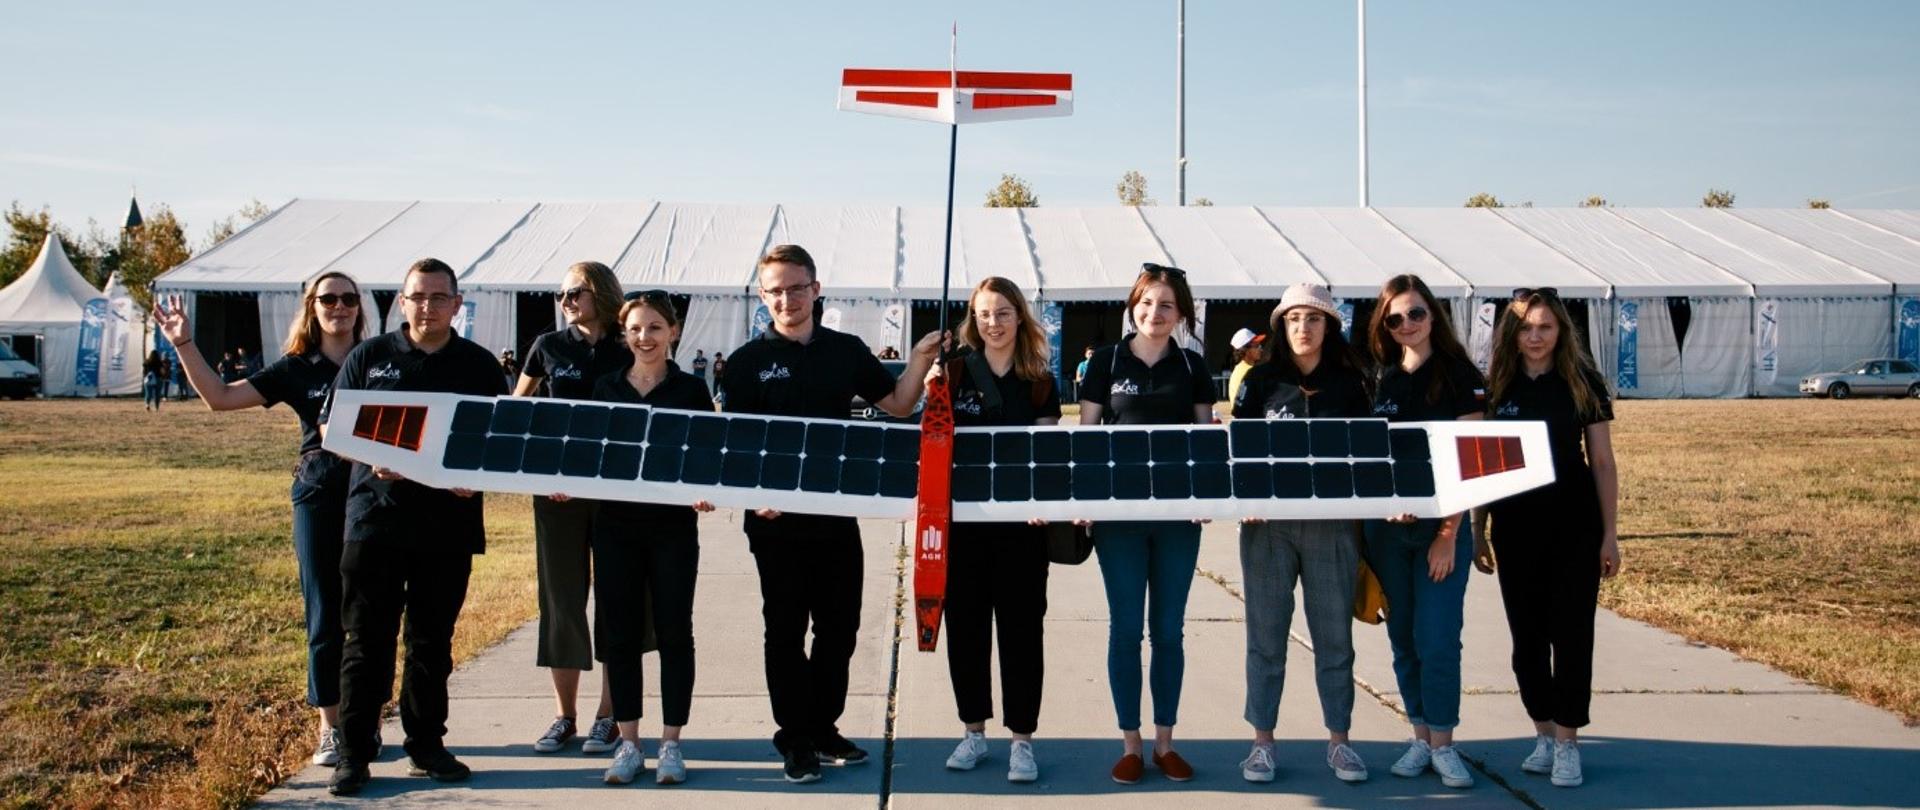 Grupa studentów trzyma samolot, na skrzydłach którego widać rzędy paneli solarnych.